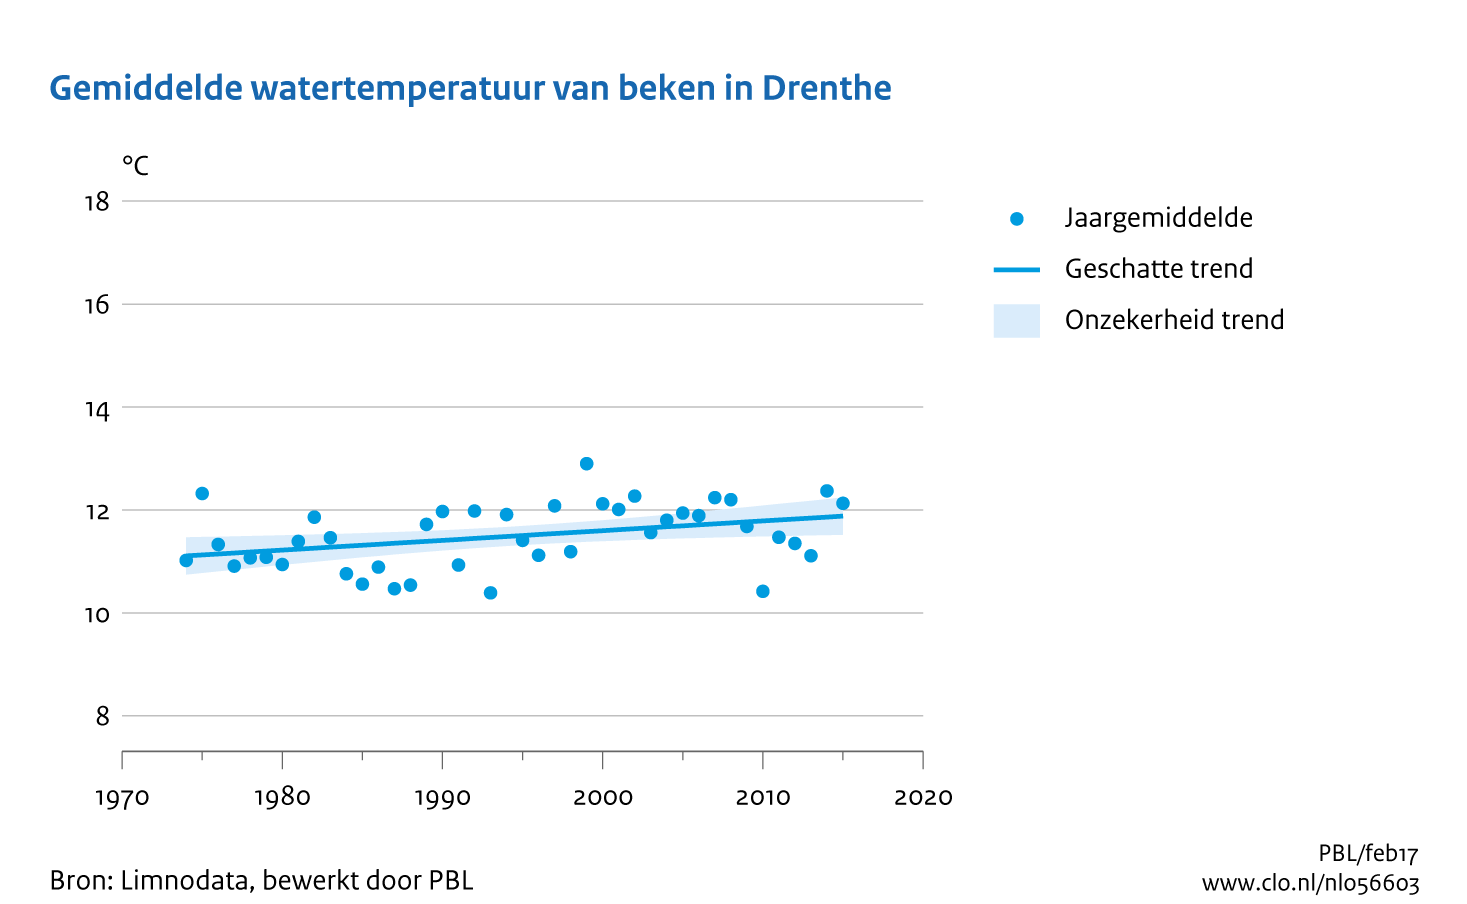 Figuur Gemiddelde watertemperatuur van beken in Drenthe. In de rest van de tekst wordt deze figuur uitgebreider uitgelegd.